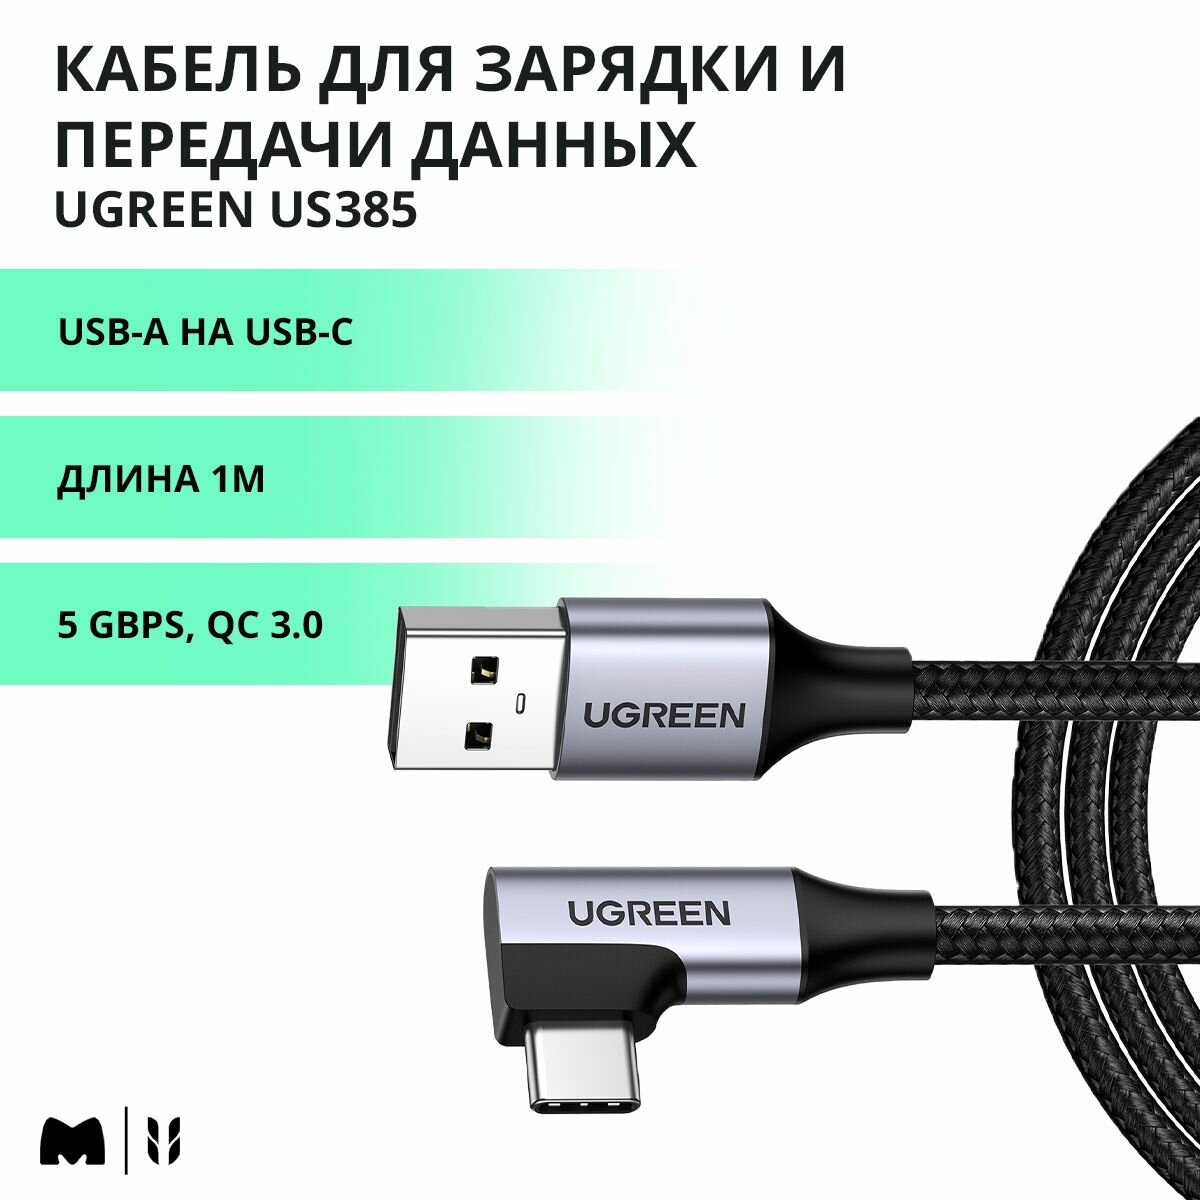 Кабель угловой для быстрой зарядки и передачи данных UGREEN US385 / USB-A на USB-C / 5 Gbps QC 3.0 / Длина 1м / цвет черный (20299)